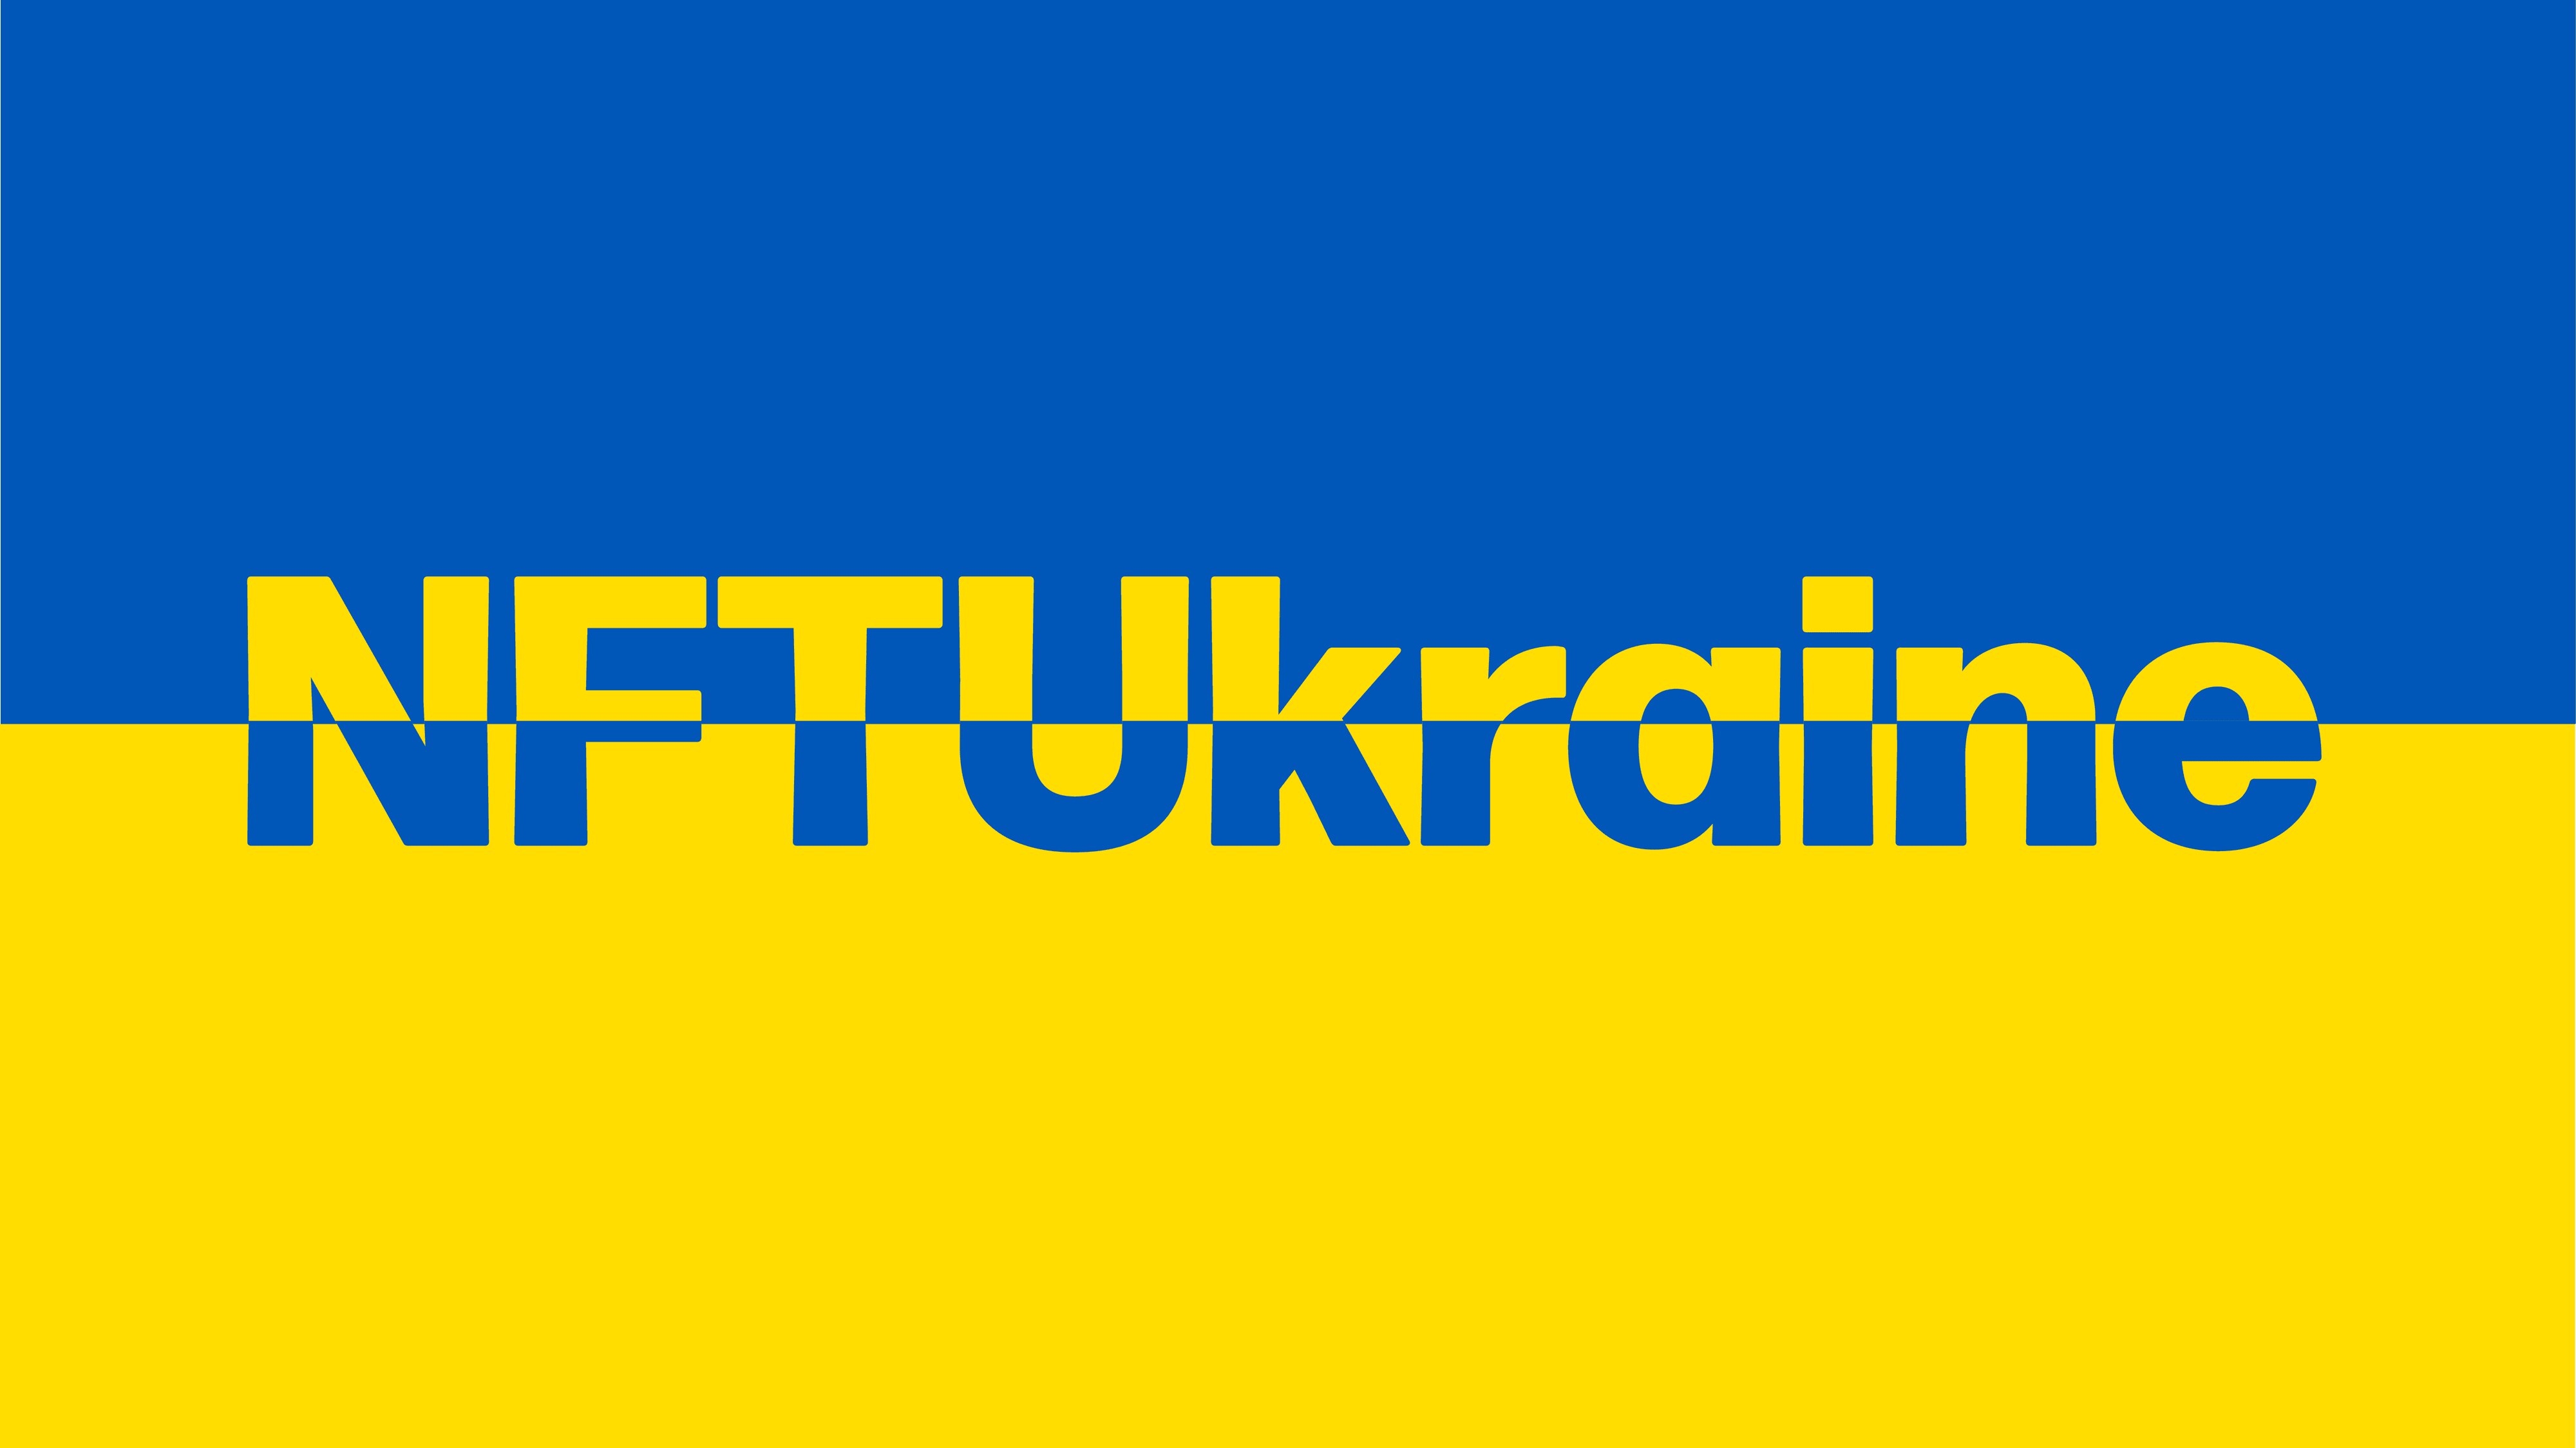 NFTU-KRAINE banner